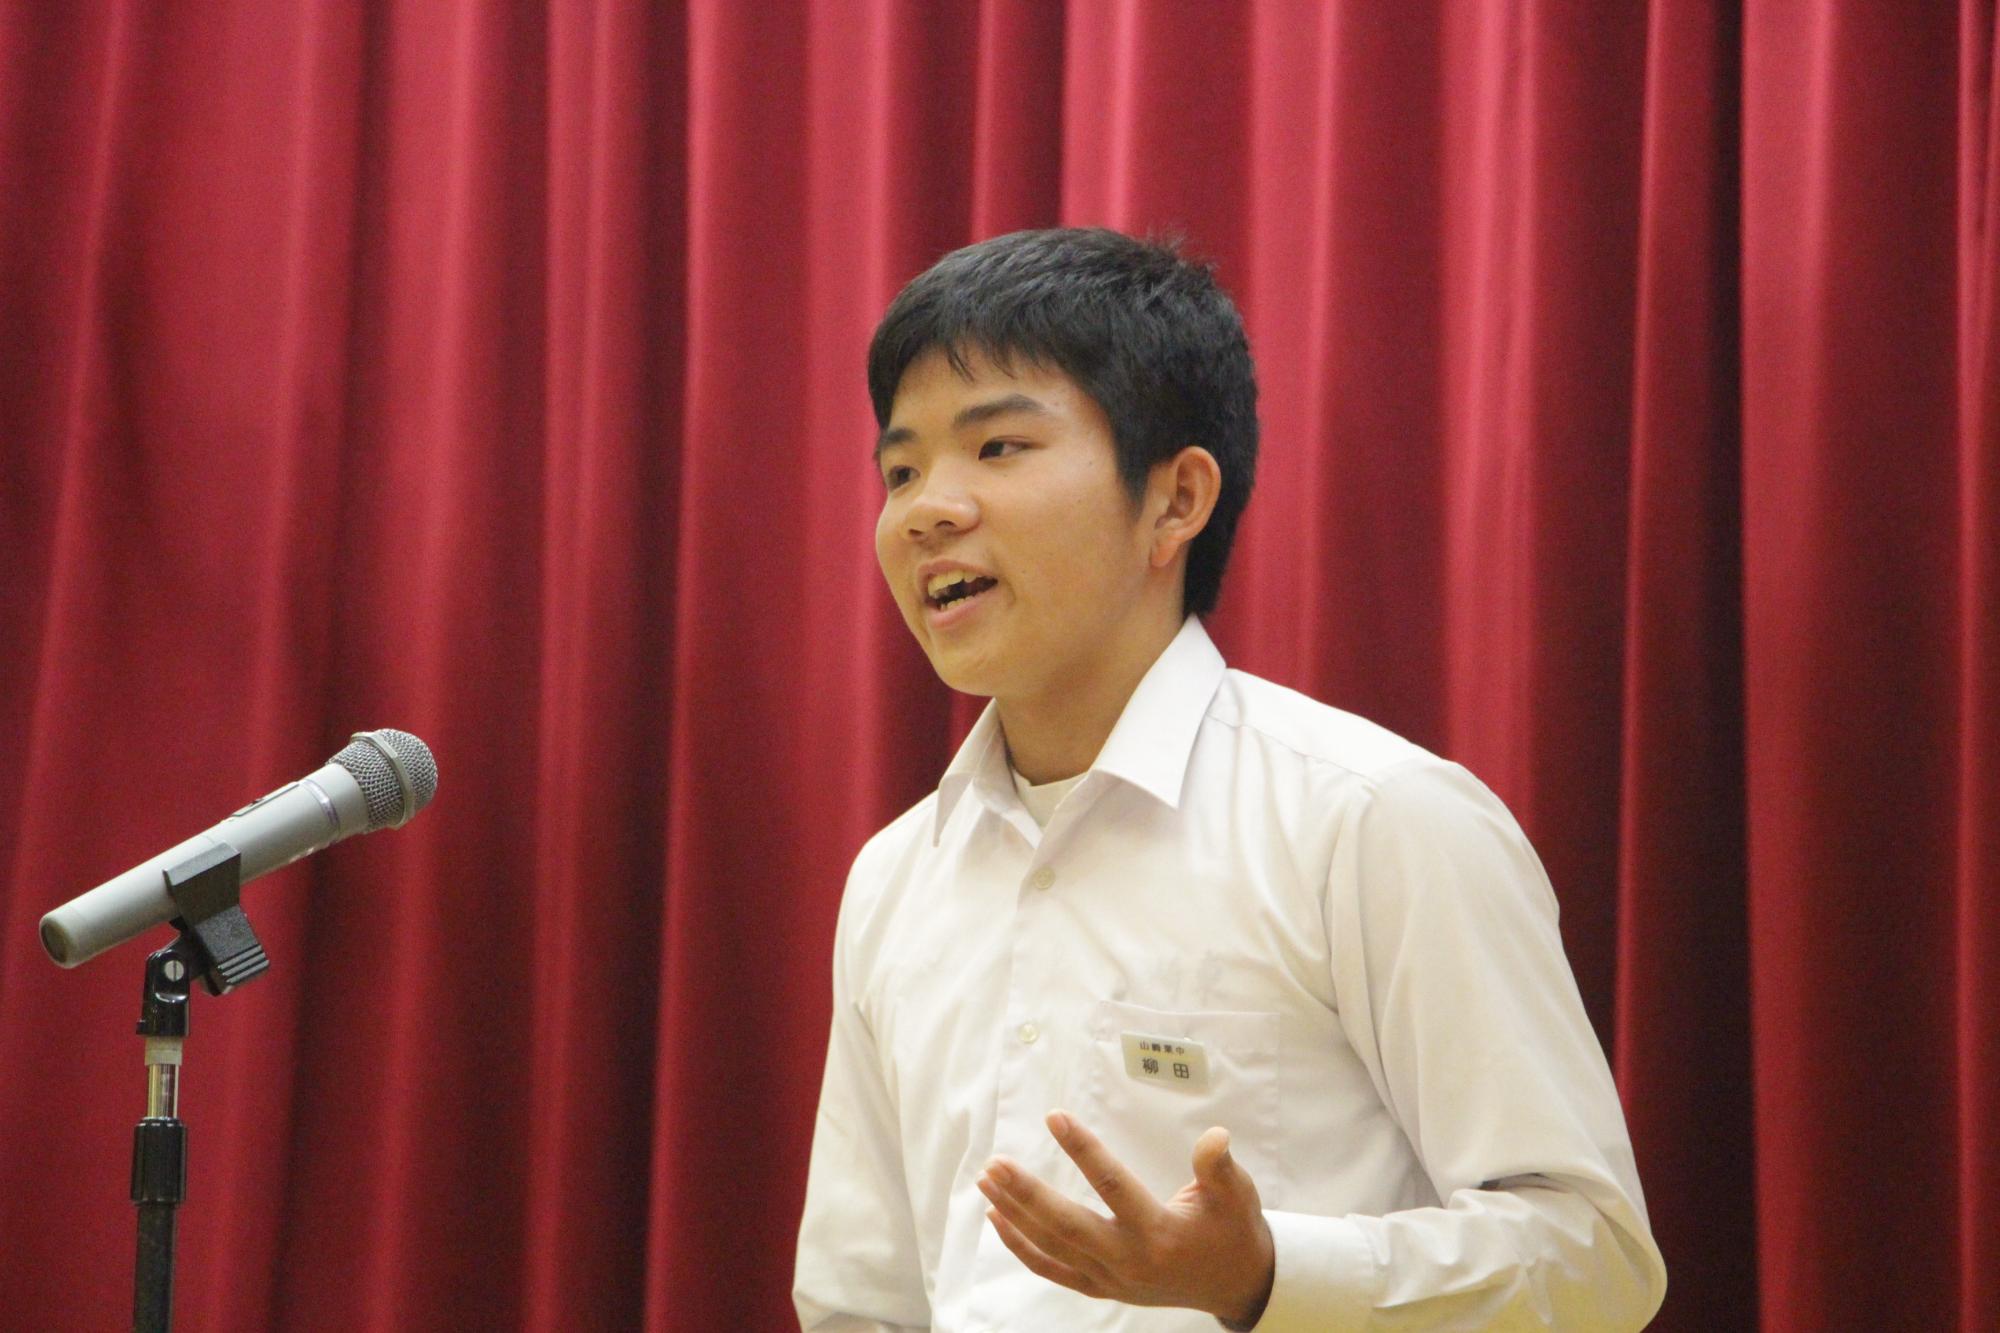 令和元年英語スピーチコンテストでスピーチする男子学生の写真